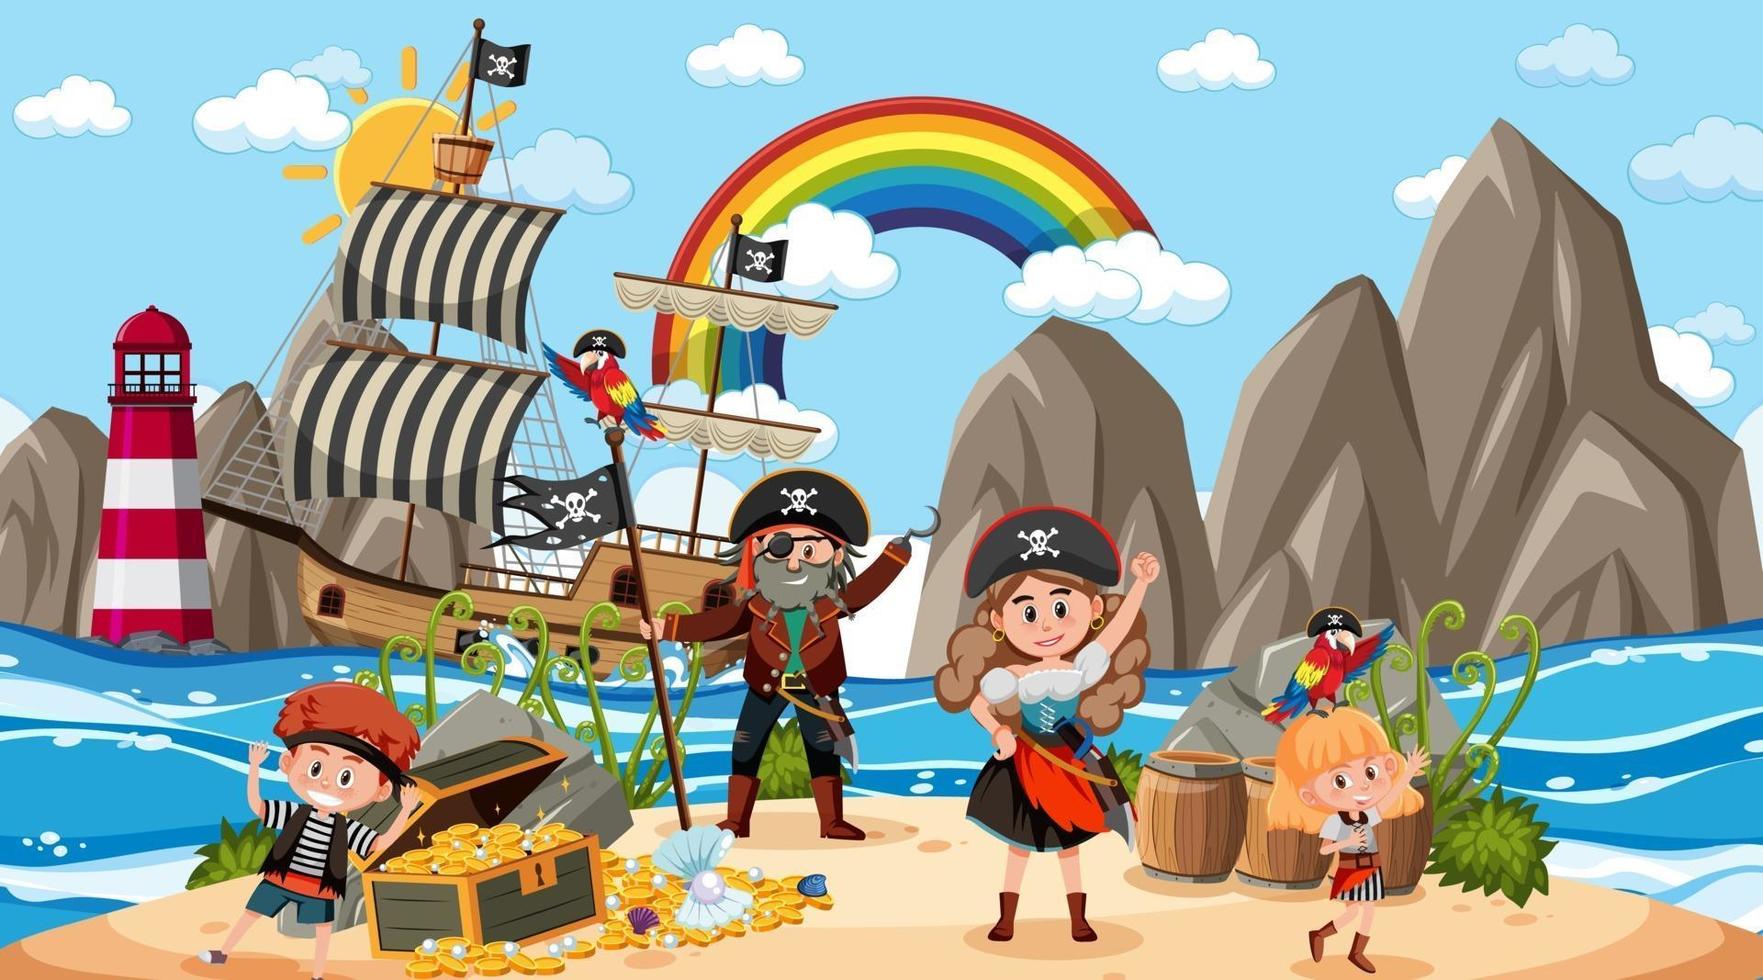 cena da ilha do tesouro durante o dia com crianças piratas vetor